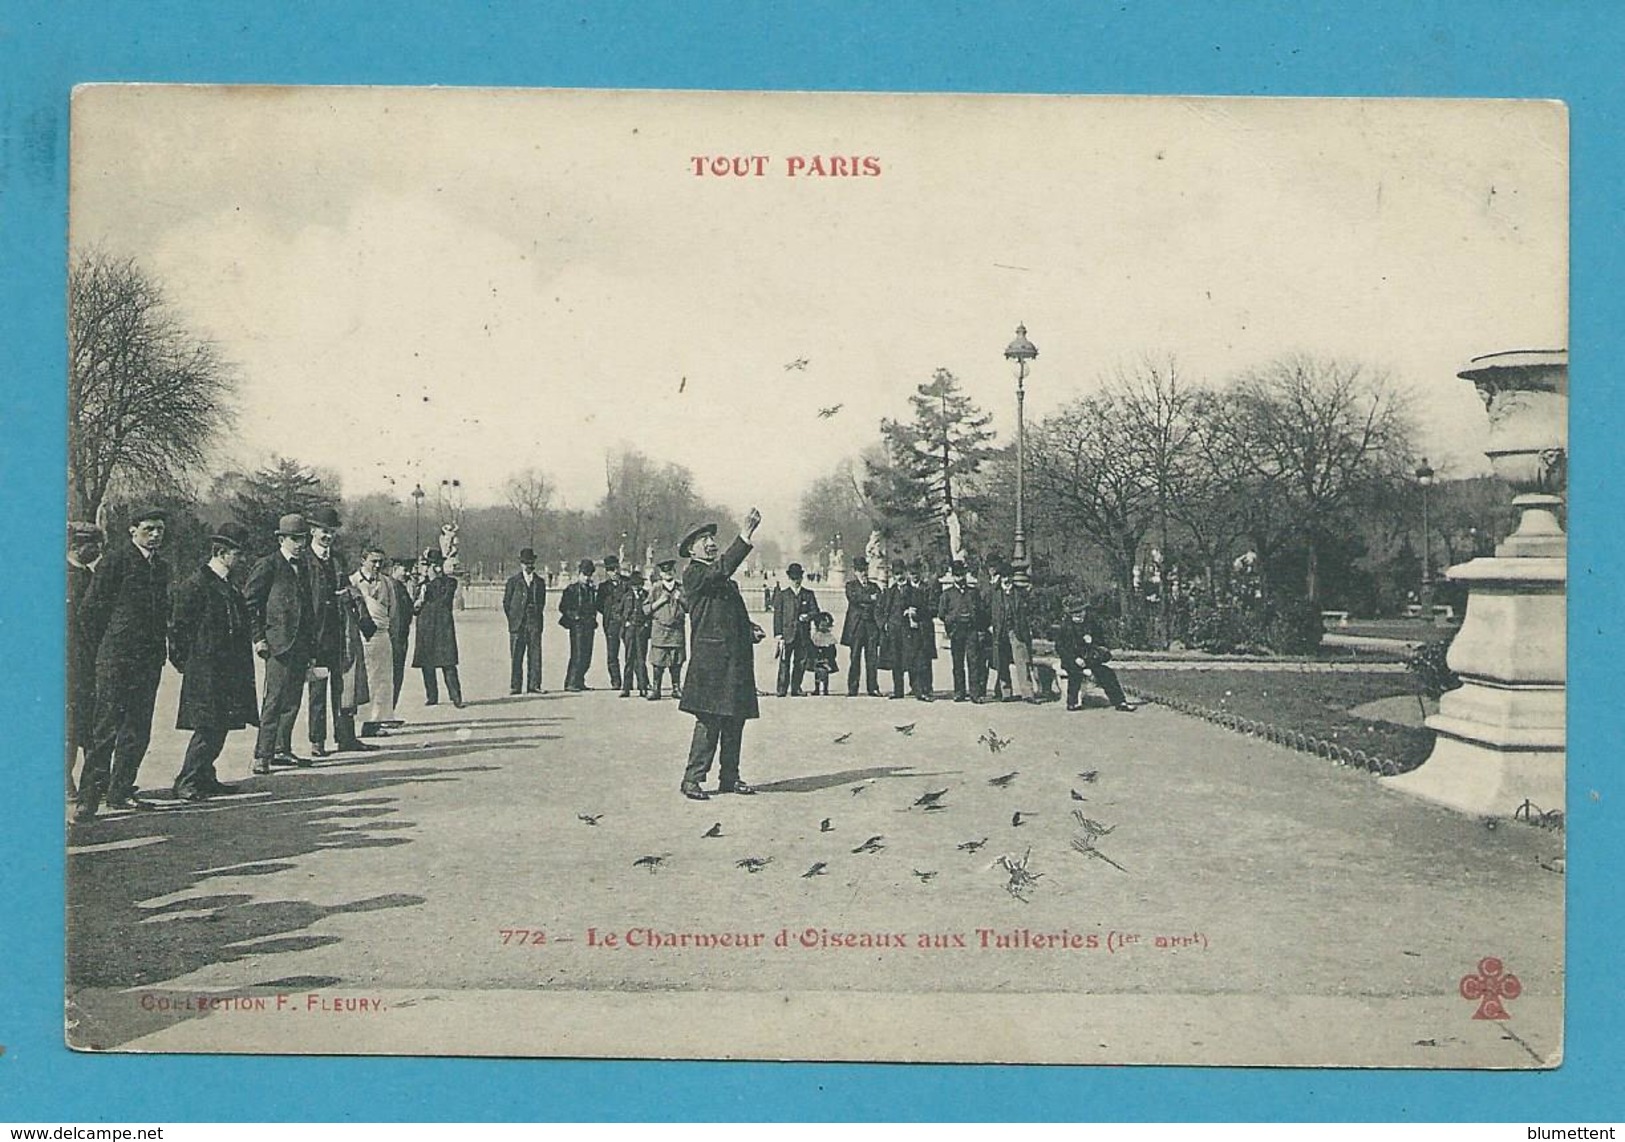 CPA TOUT PARIS 772 - Le Charmeur D'oiseaux Aux Tuileries (1er Arrt.) Edition FLEURY - Distretto: 01